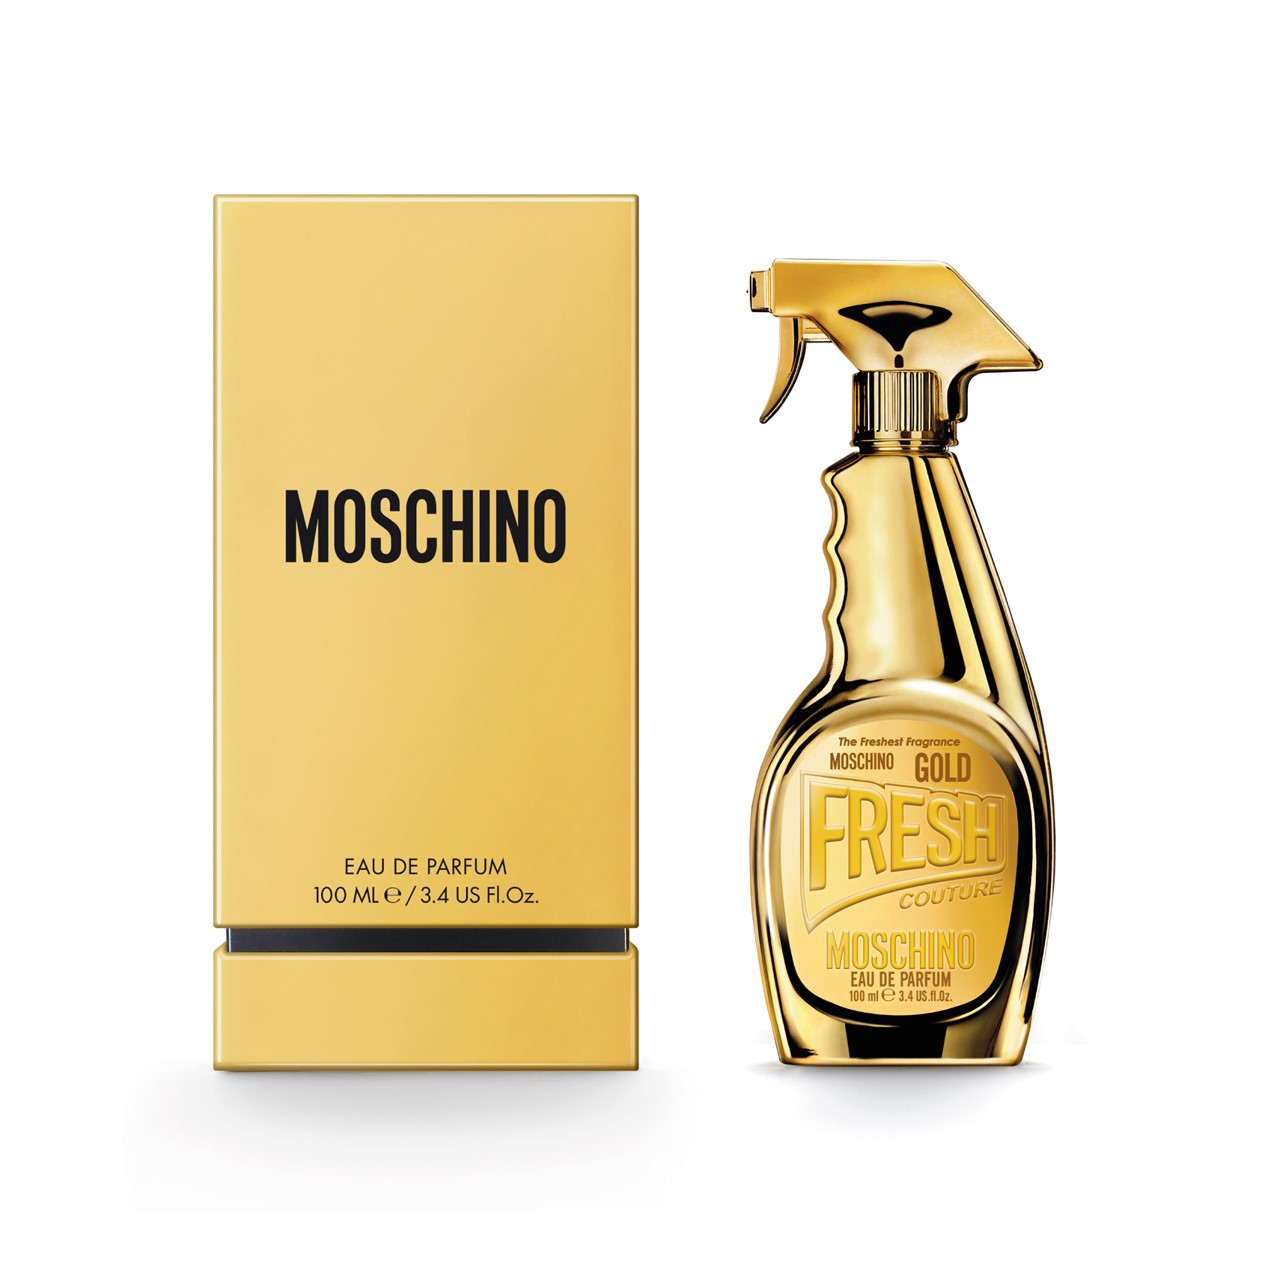 Moschino Gold Fresh Couture Women 3.4 oz Eau de Parfum Spray